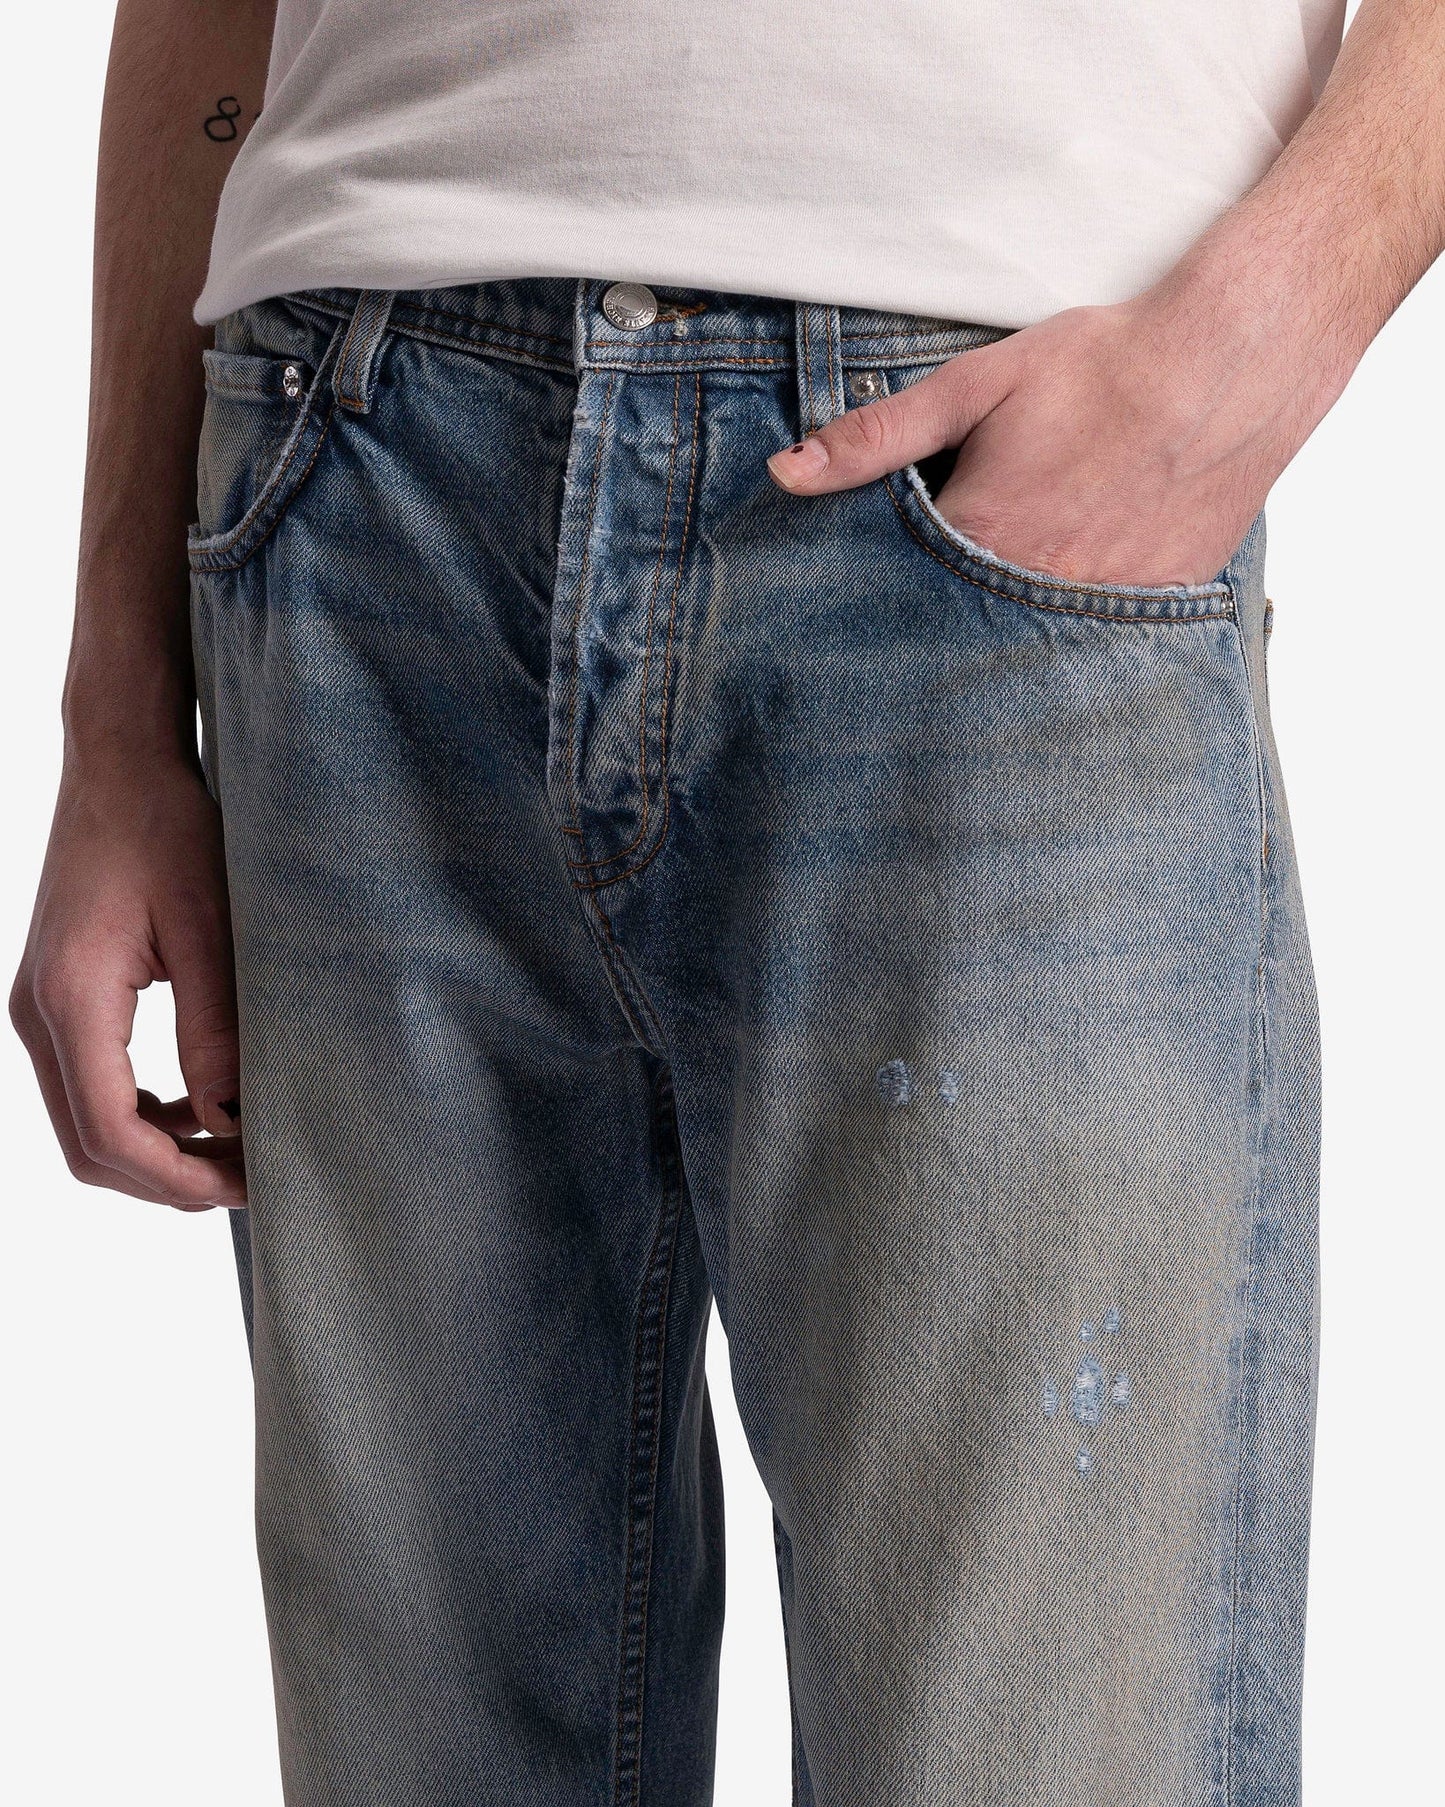 Enfants Riches Deprimes Men's Jeans Burnt Flare Jeans in Washed Indigo